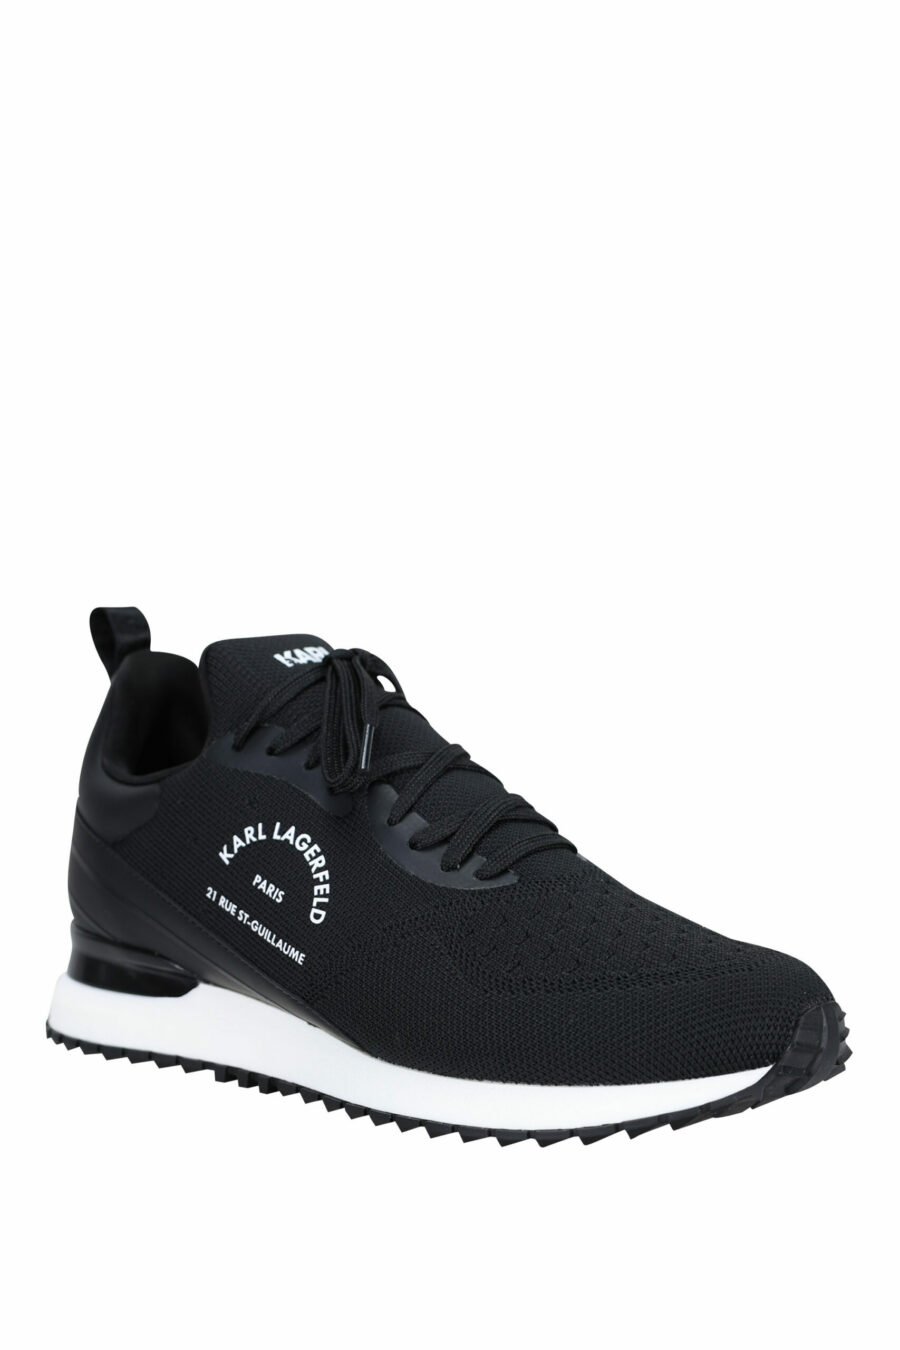 Chaussures "velocitor" noires avec logo "rue st guillaume" blanc - 5059529326370 1 à l'échelle